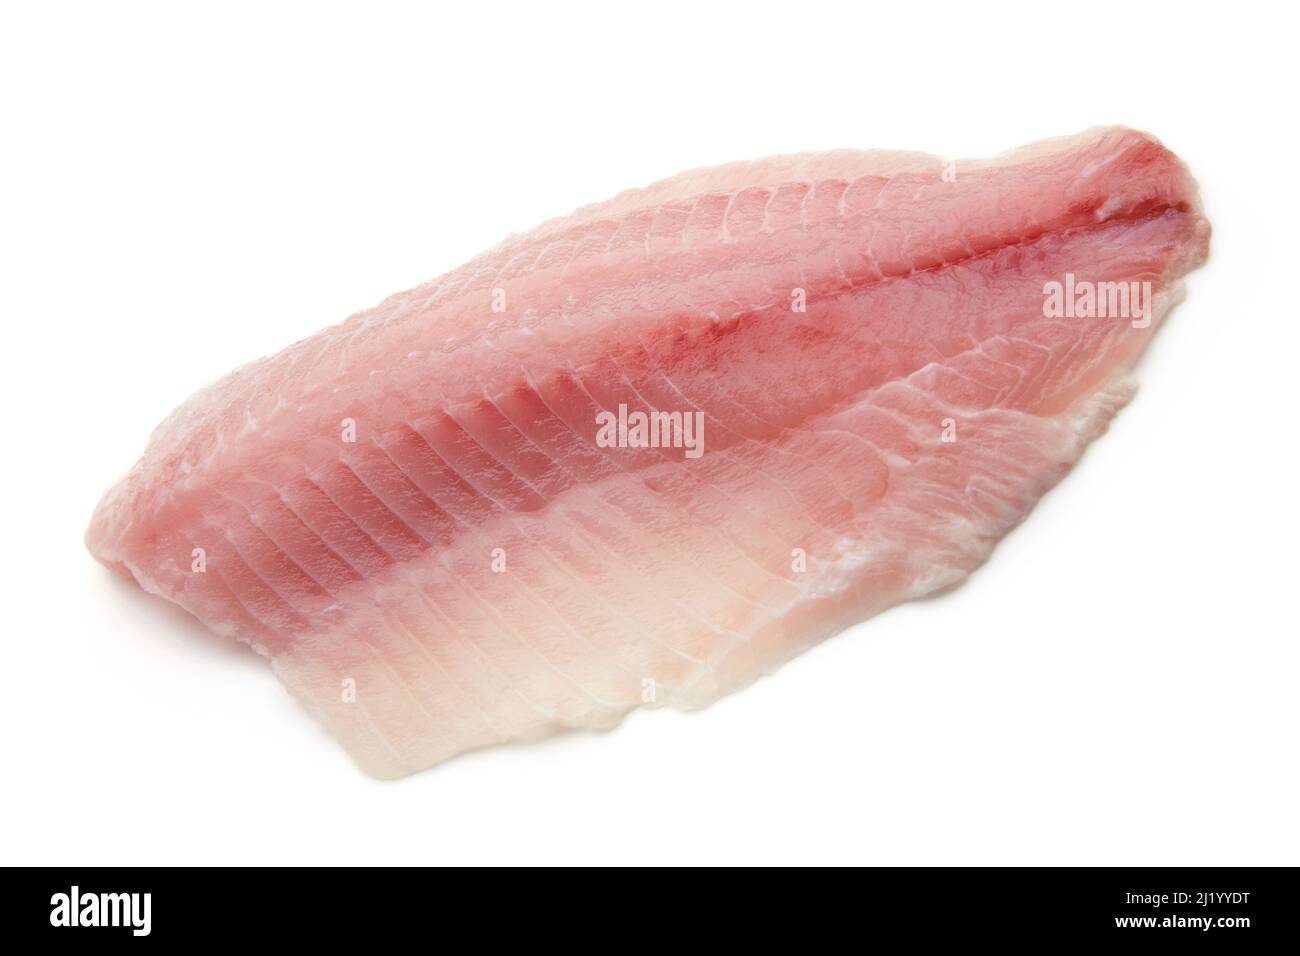 Filetto di pesce bianco grezzo isolato su sfondo bianco. Alimenti sani a basso contenuto calorico Foto Stock